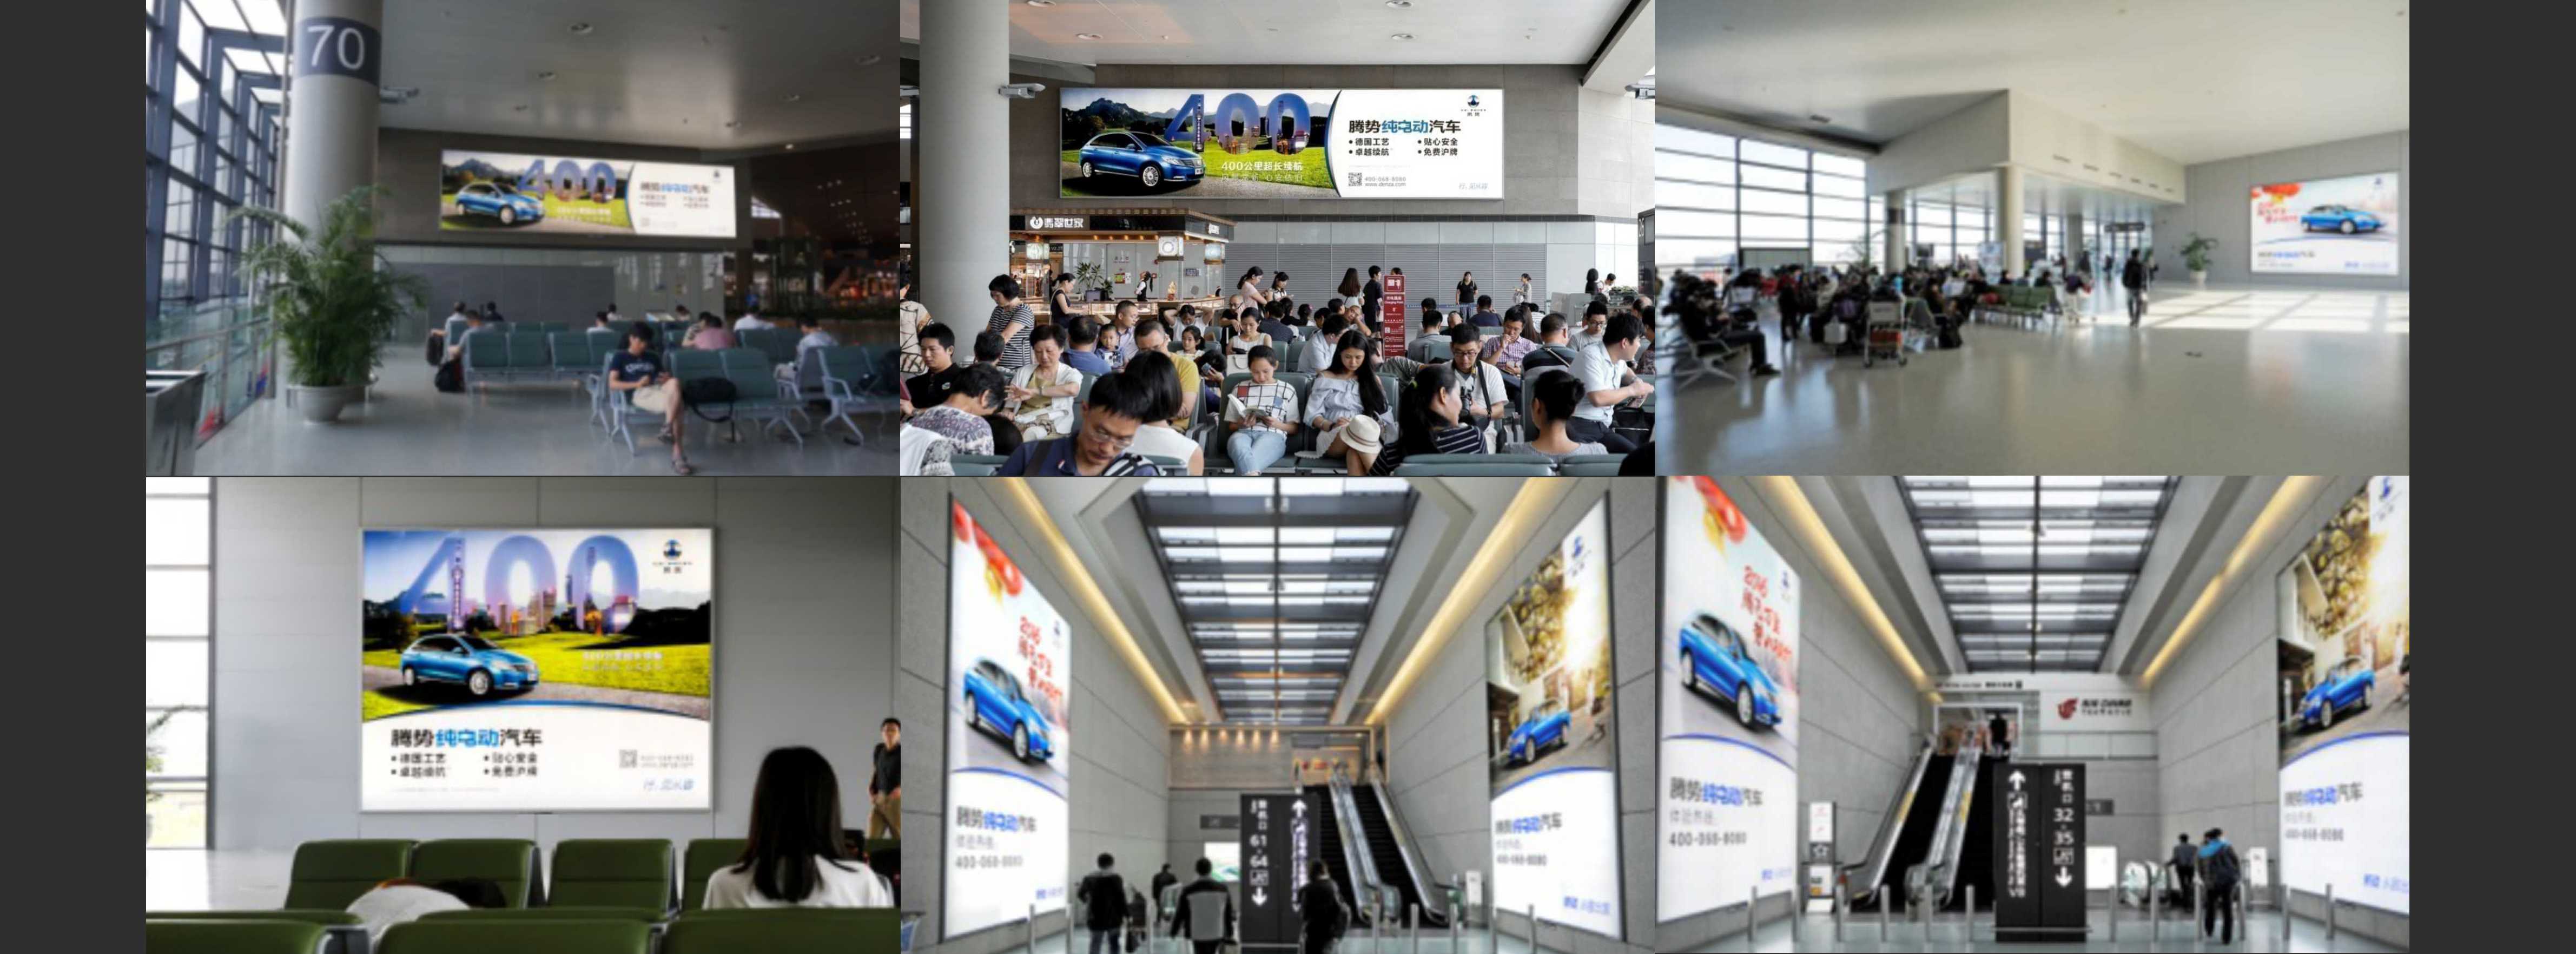 上海机场广告-虹桥T2候机大厅巨型墙面灯箱